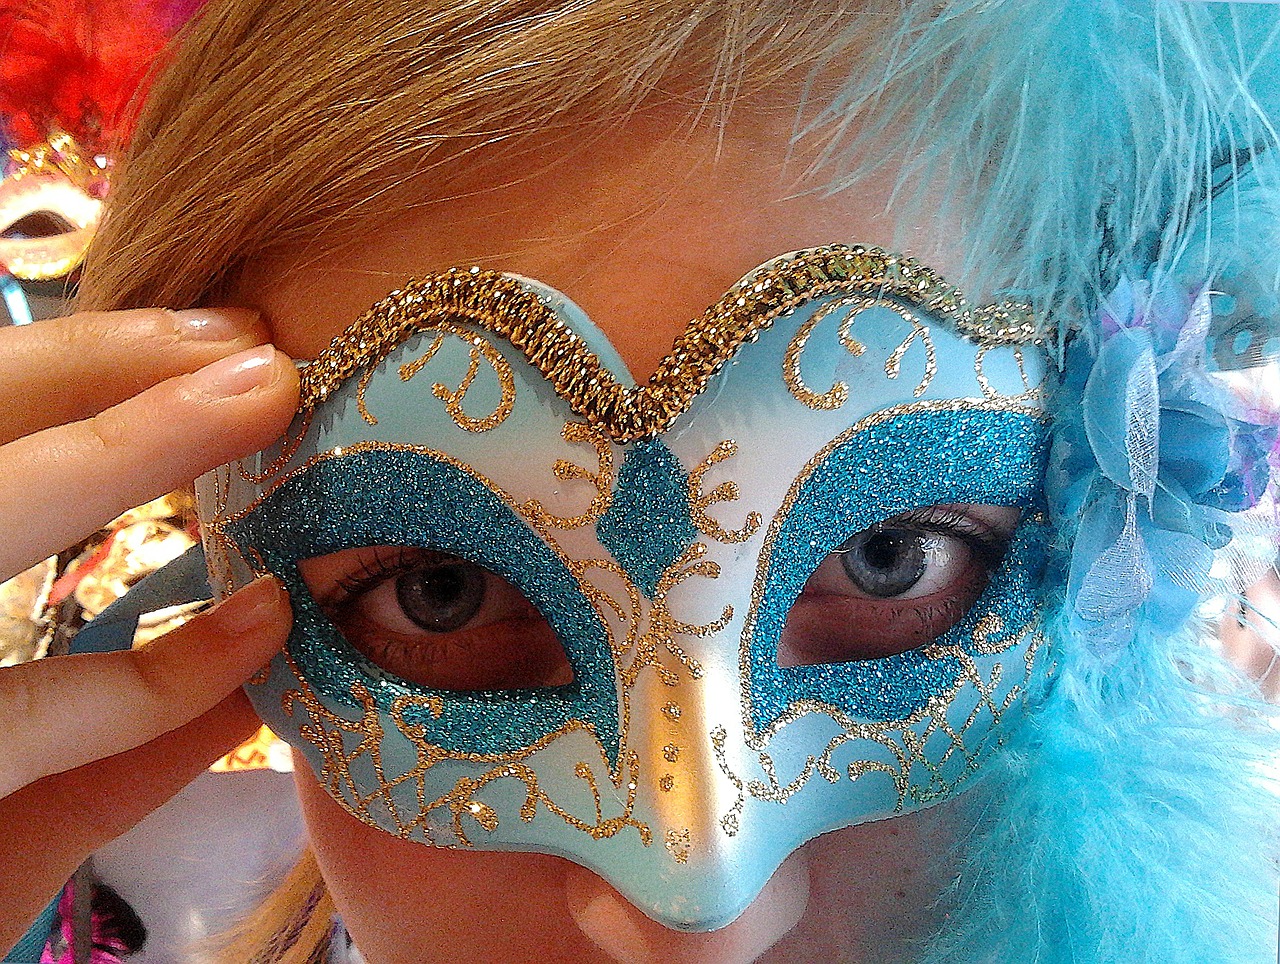 velencei-karneval-maszk.jpg